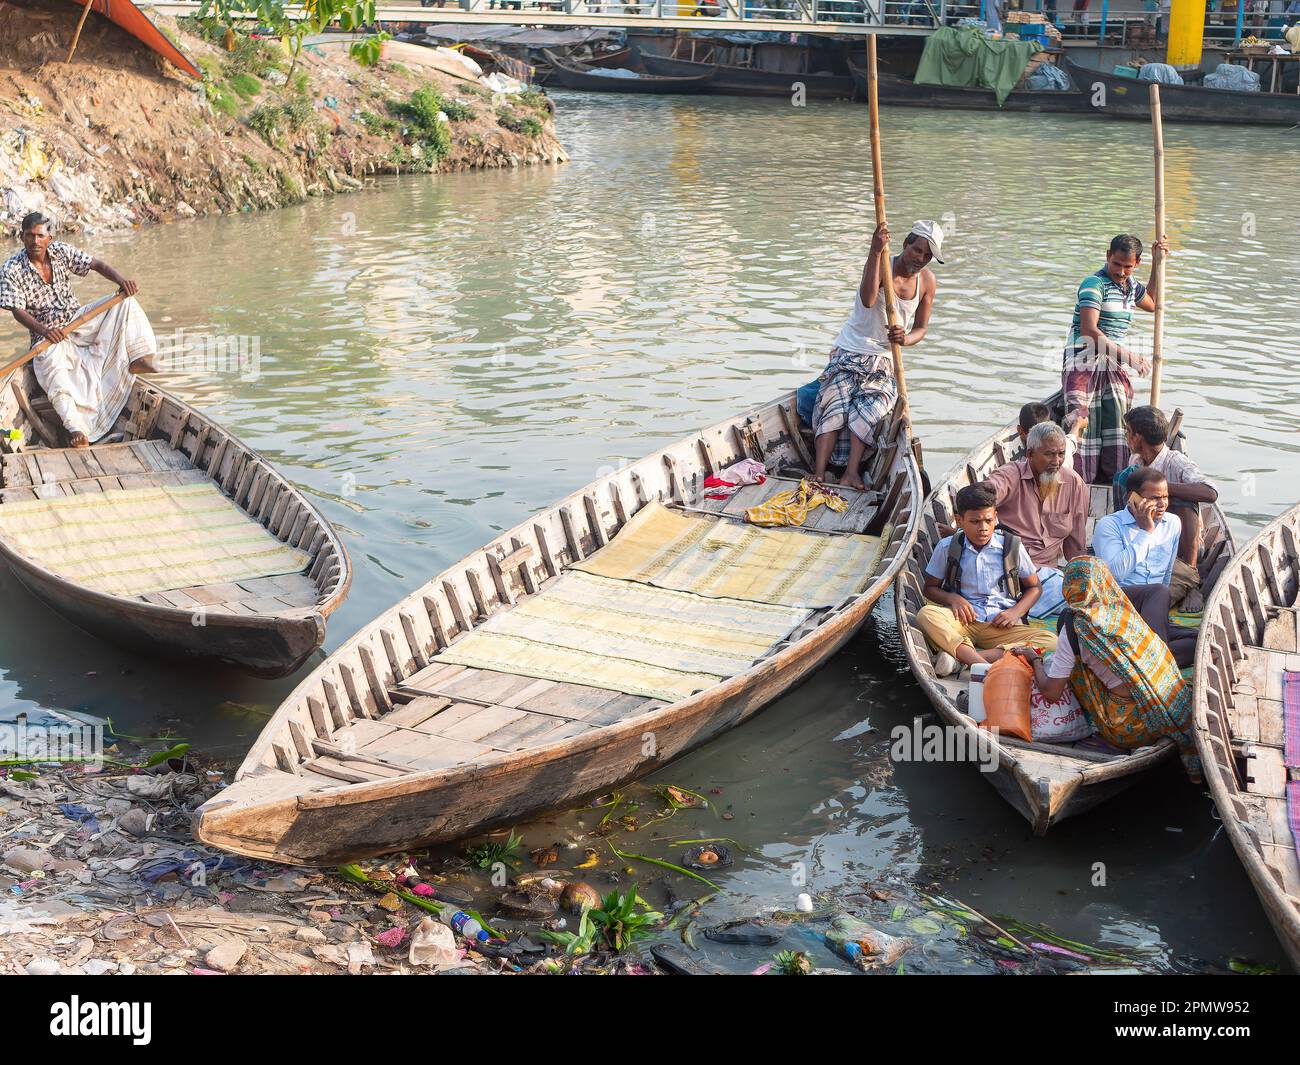 Traditionelle Fähren bringen Passagiere über den Fluss an der Wise Ghat Boat Station am Buriganga River in Dhaka, der Hauptstadt von Bangladesch. Stockfoto